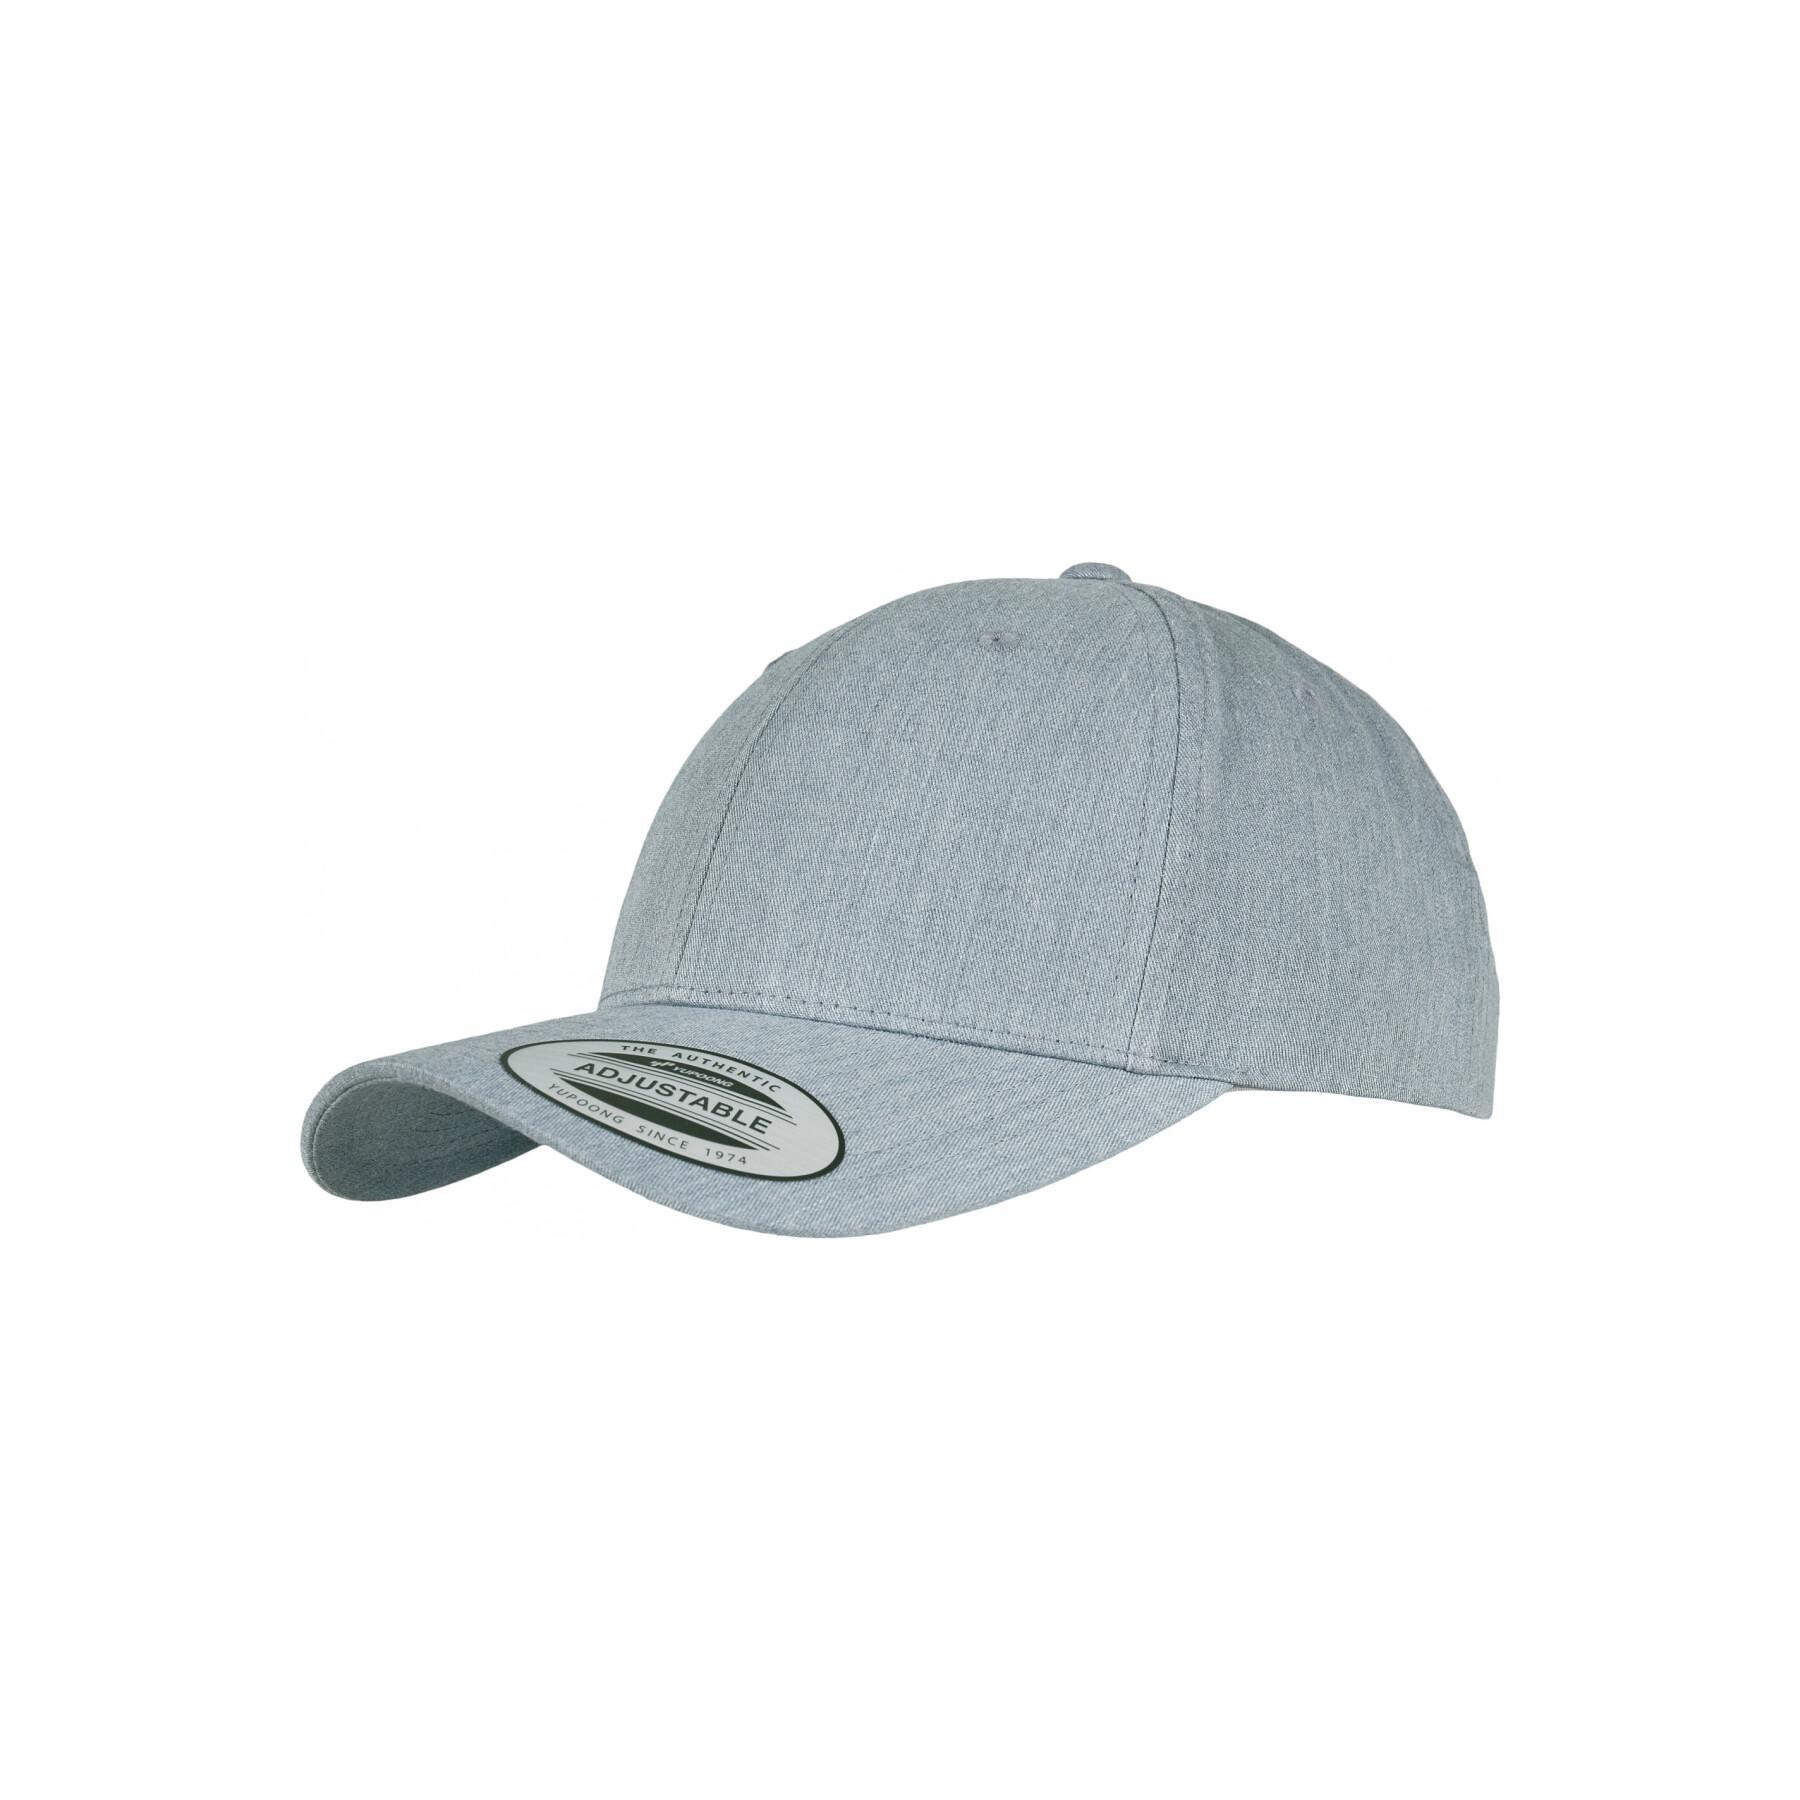 Flexfit curved caps Baseball Accessories Classic - Headwear cap - -